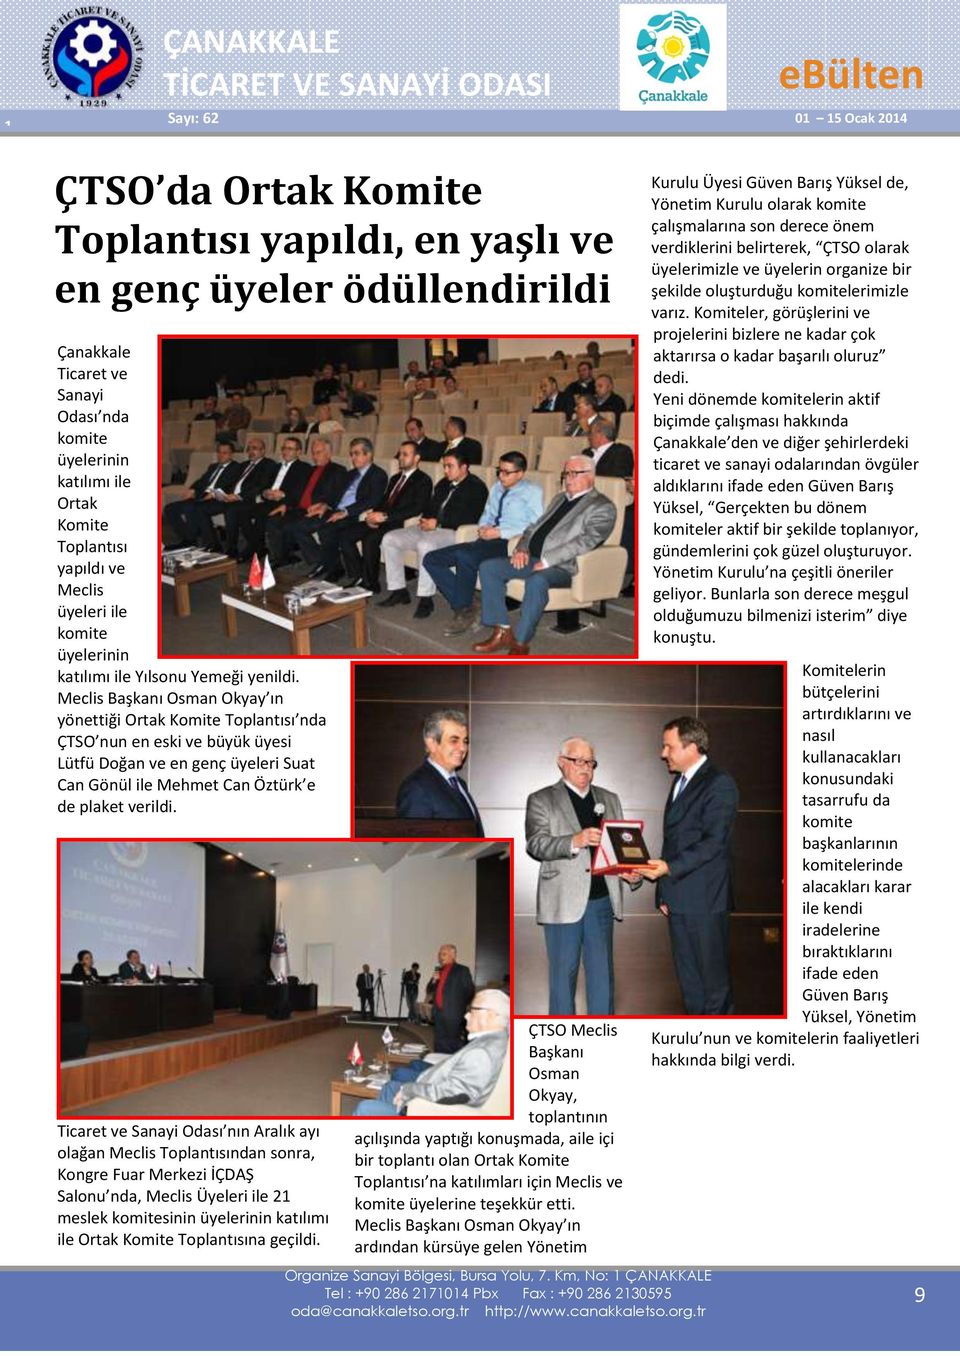 Meclis Başkanı Osman Okyay ın yönettiği Ortak Komite Toplantısı nda ÇTSO nun en eski ve büyük üyesi Lütfü Doğan ve en genç üyeleri Suat Can Gönül ile Mehmet Can Öztürk e de plaket verildi.